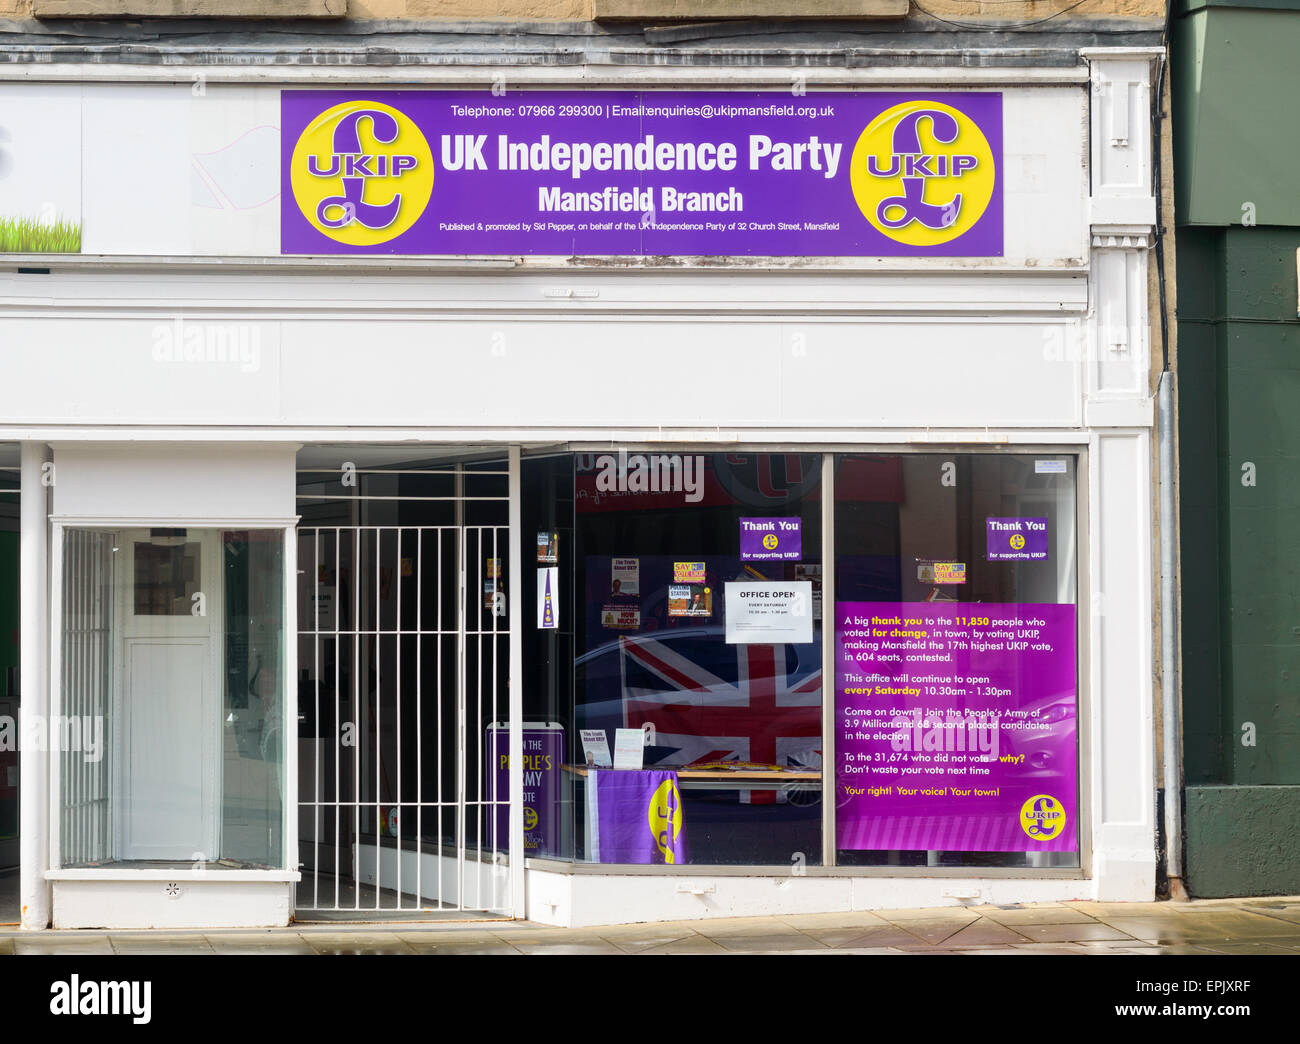 Das Mansfield Zweig der britischen politischen Partei UKIP-UK Independence Party. 2015. Stockfoto